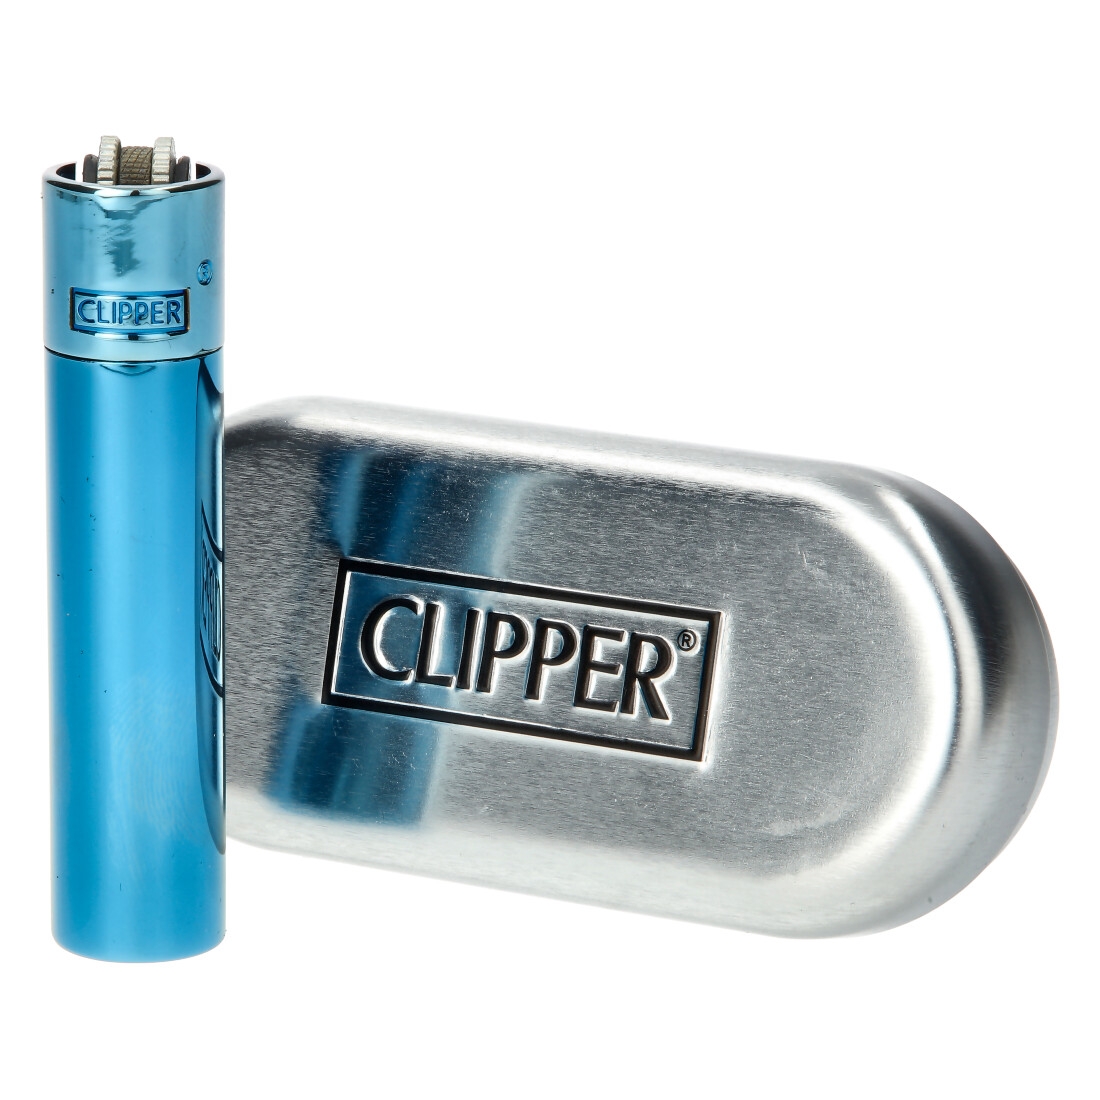 Briquet Clipper Métal - acheter pas cher briquet clipper metal